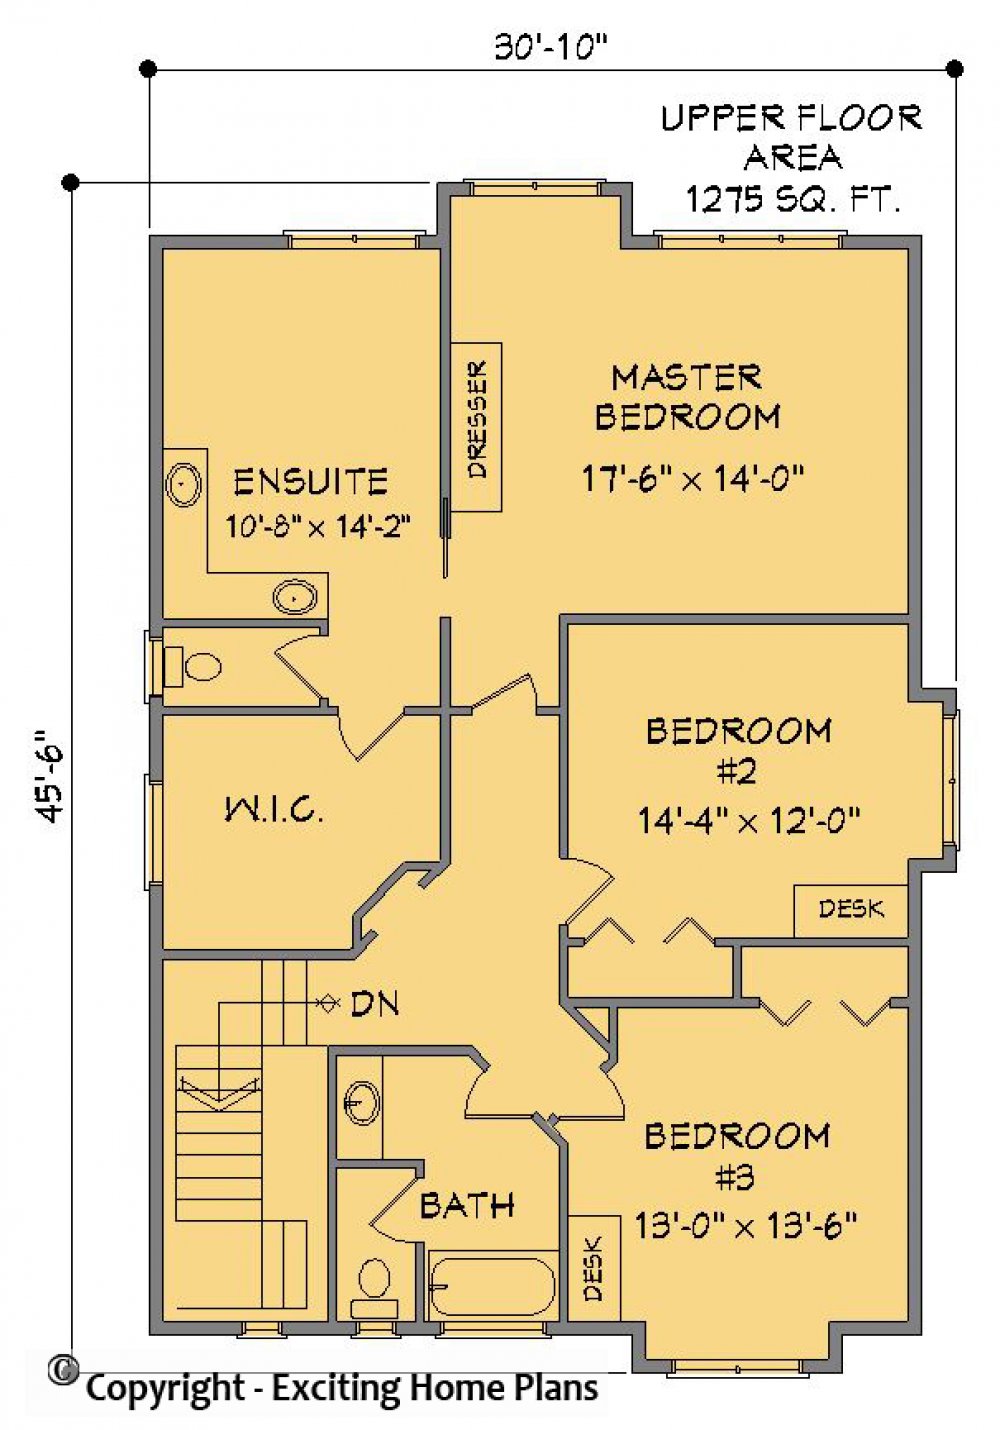 House Plan E1268-10 Upper Floor Plan